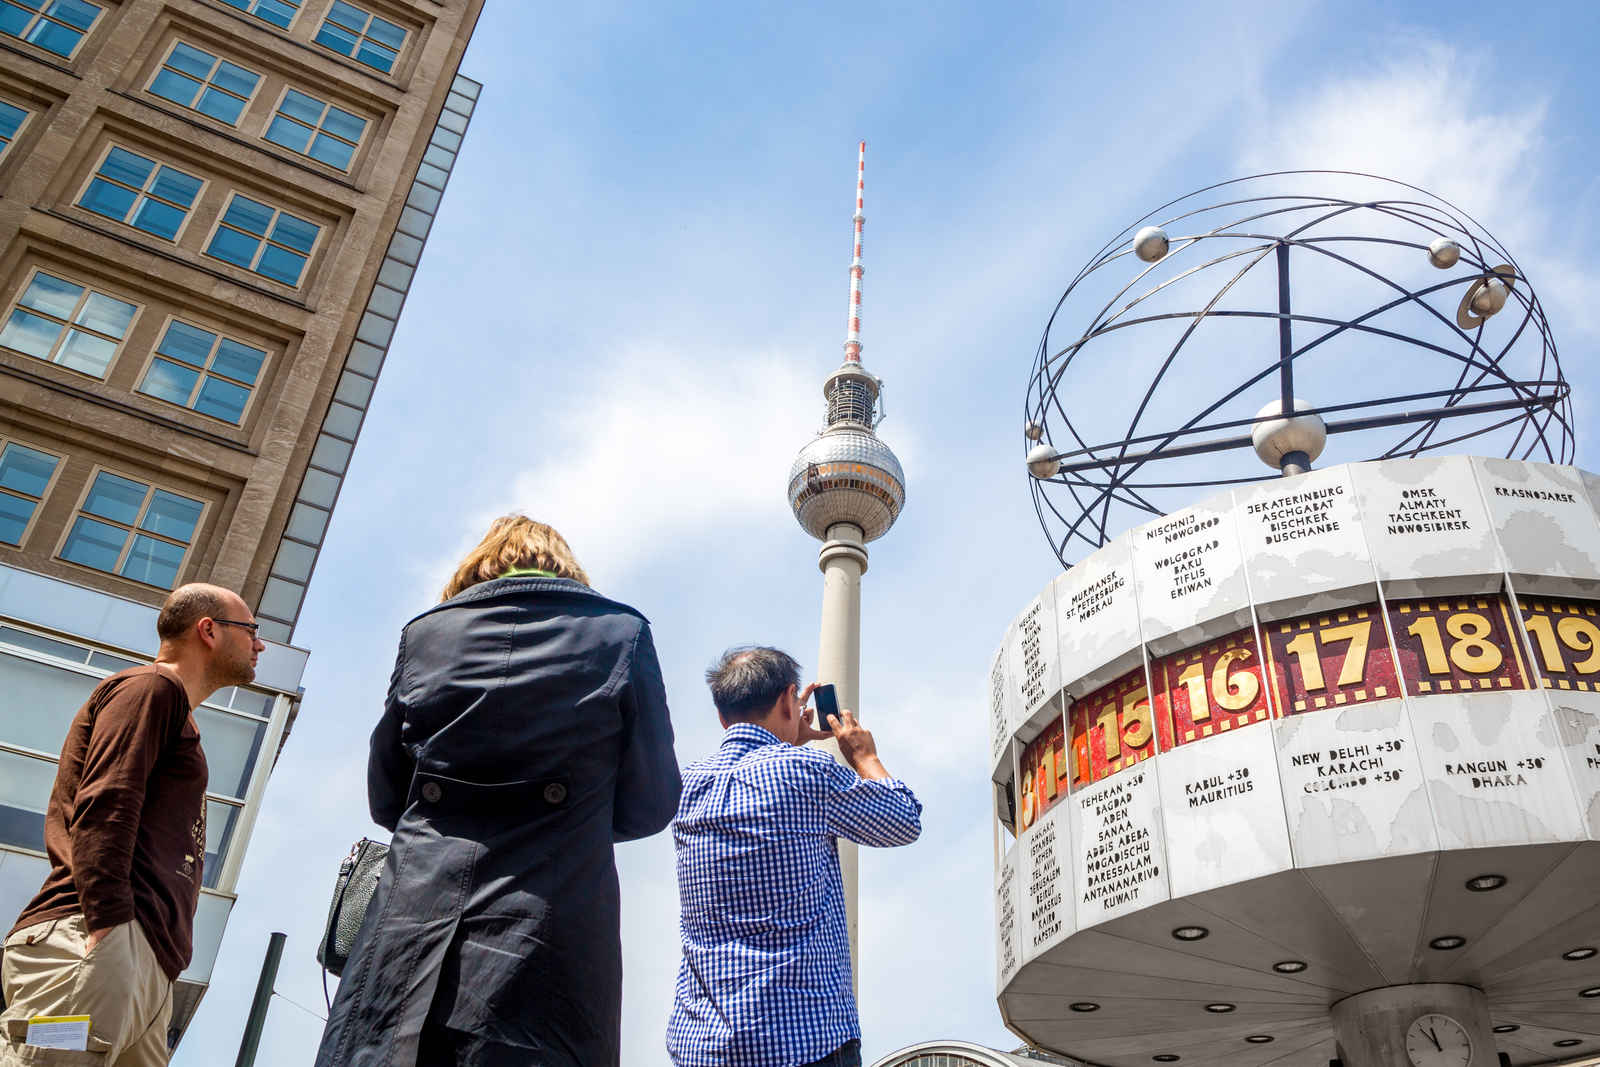 Ticket tower. Телебашня в Берлине. Телевышка в Берлине. Самая высокая телебашня Германия. Берлинская телебашня с туристами.